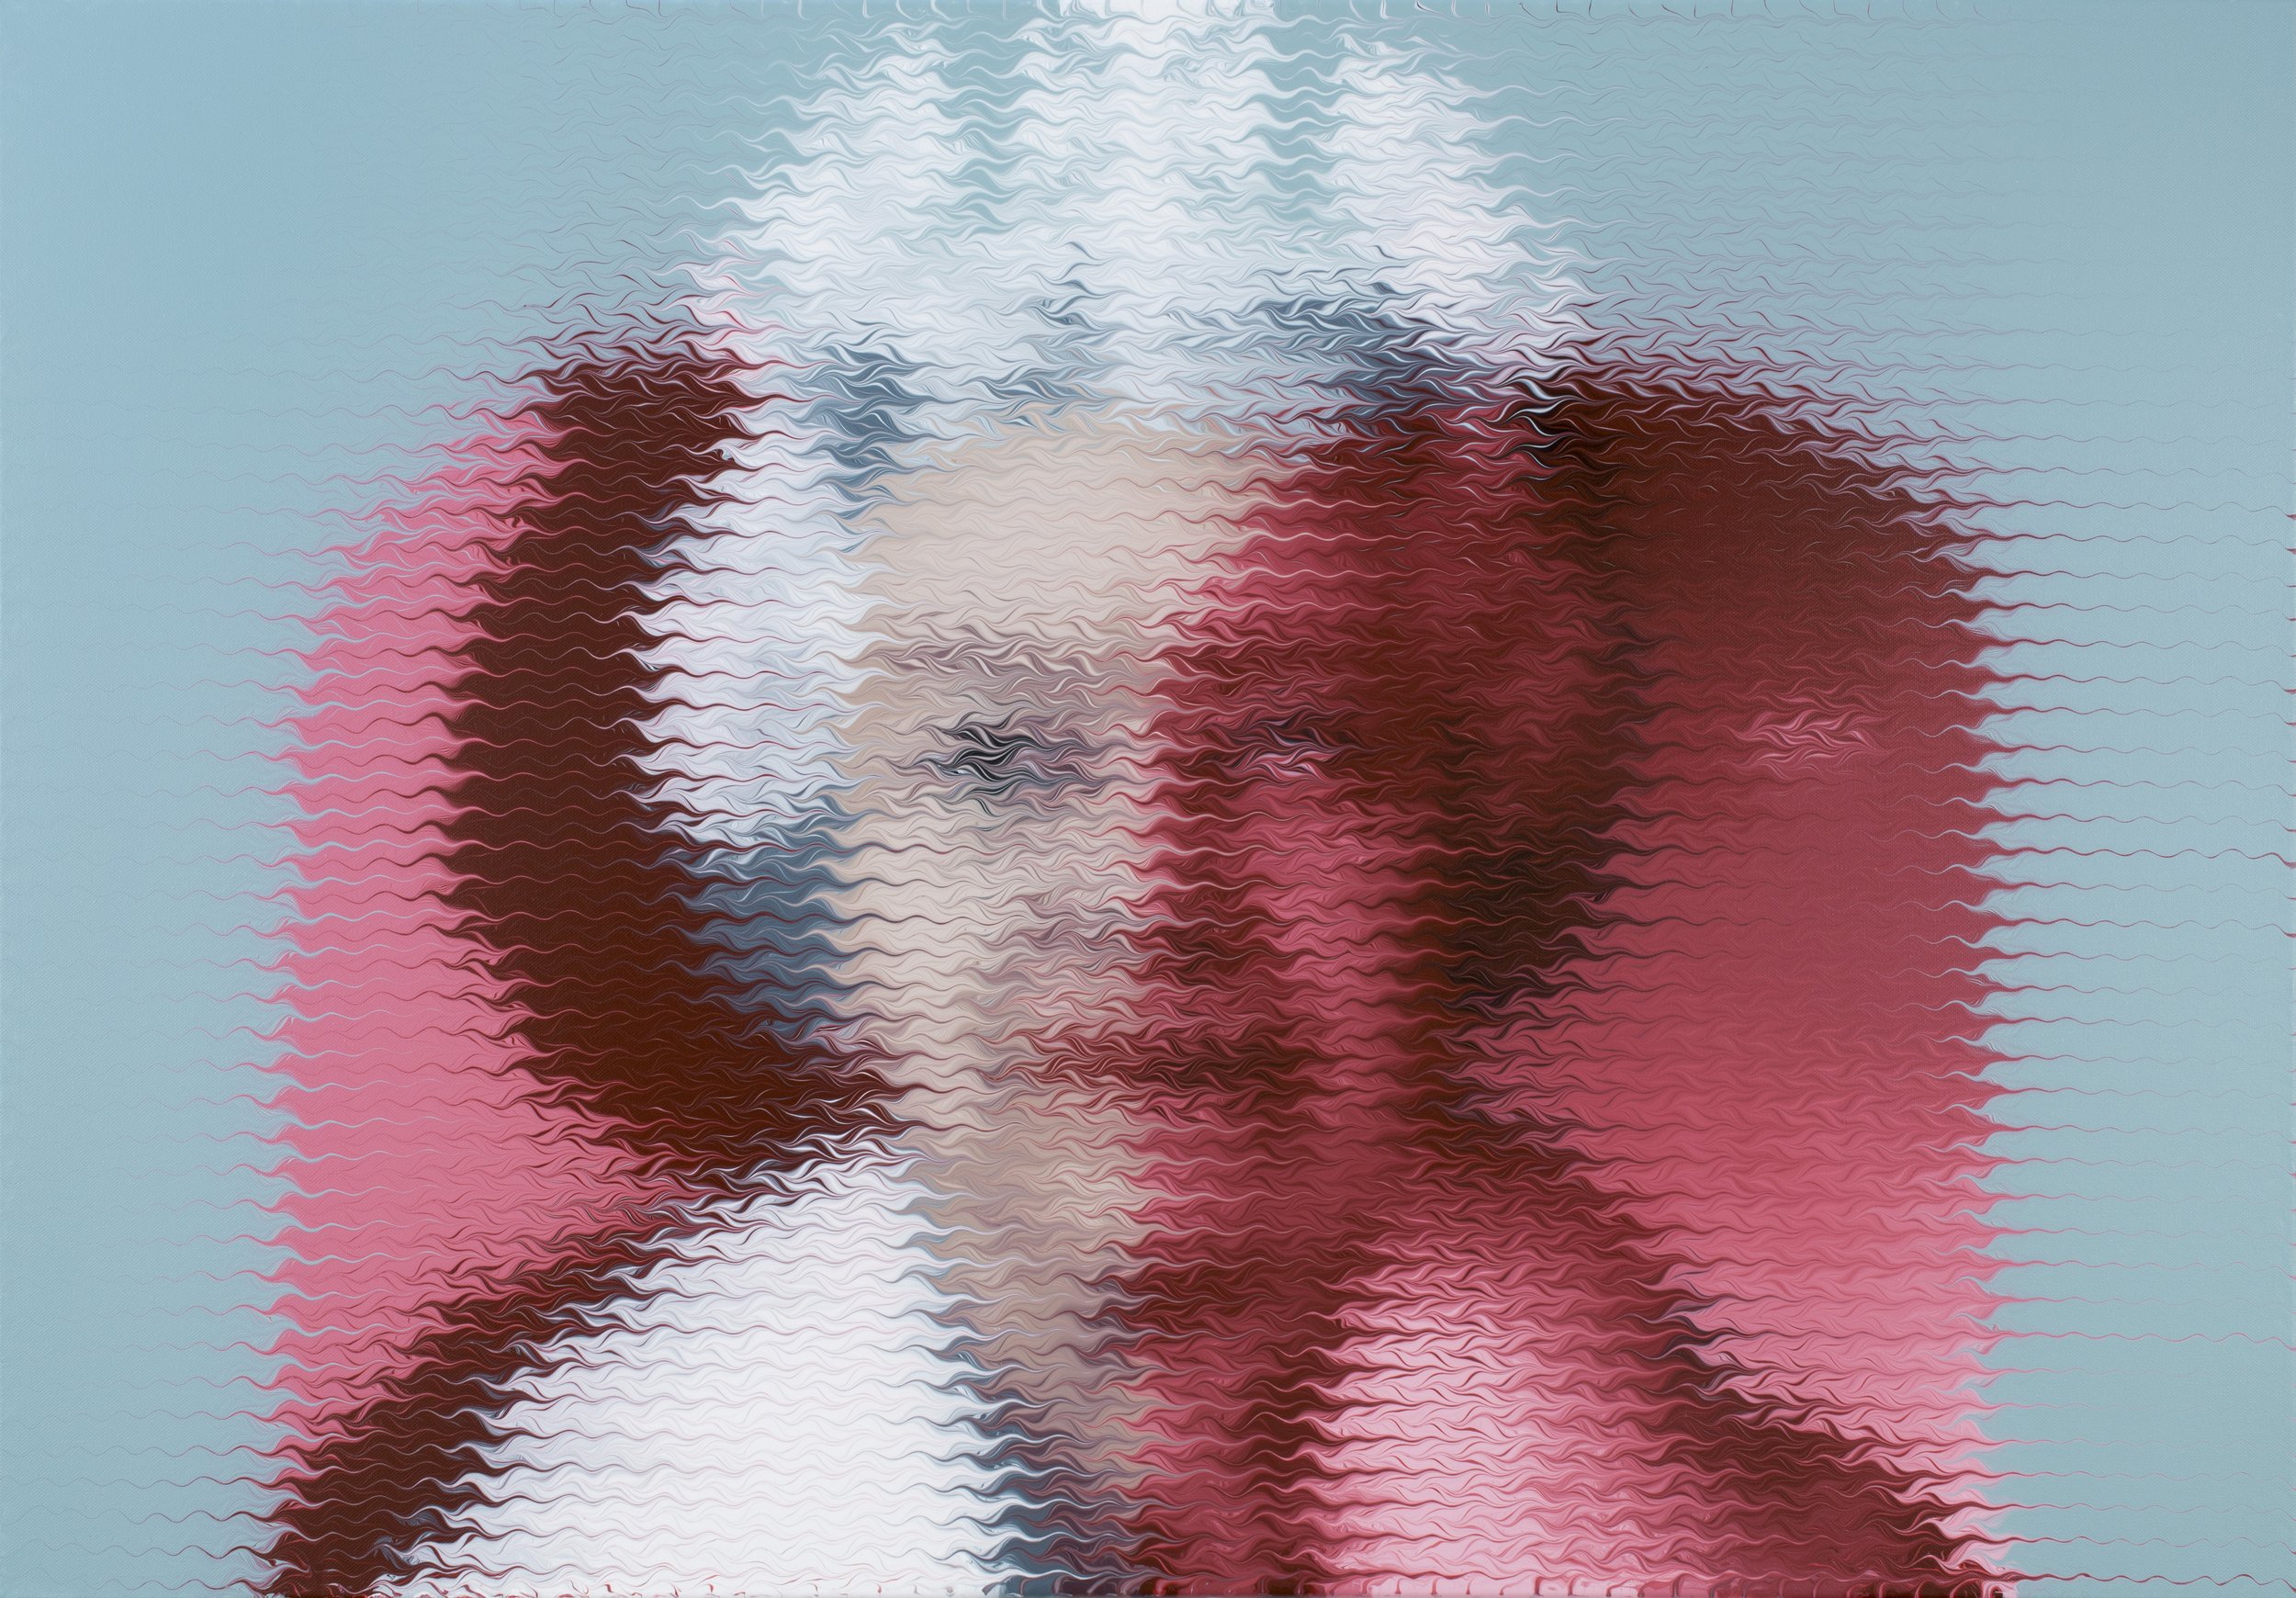 Queen Elizabeth II 2014, 100x70cm.jpg